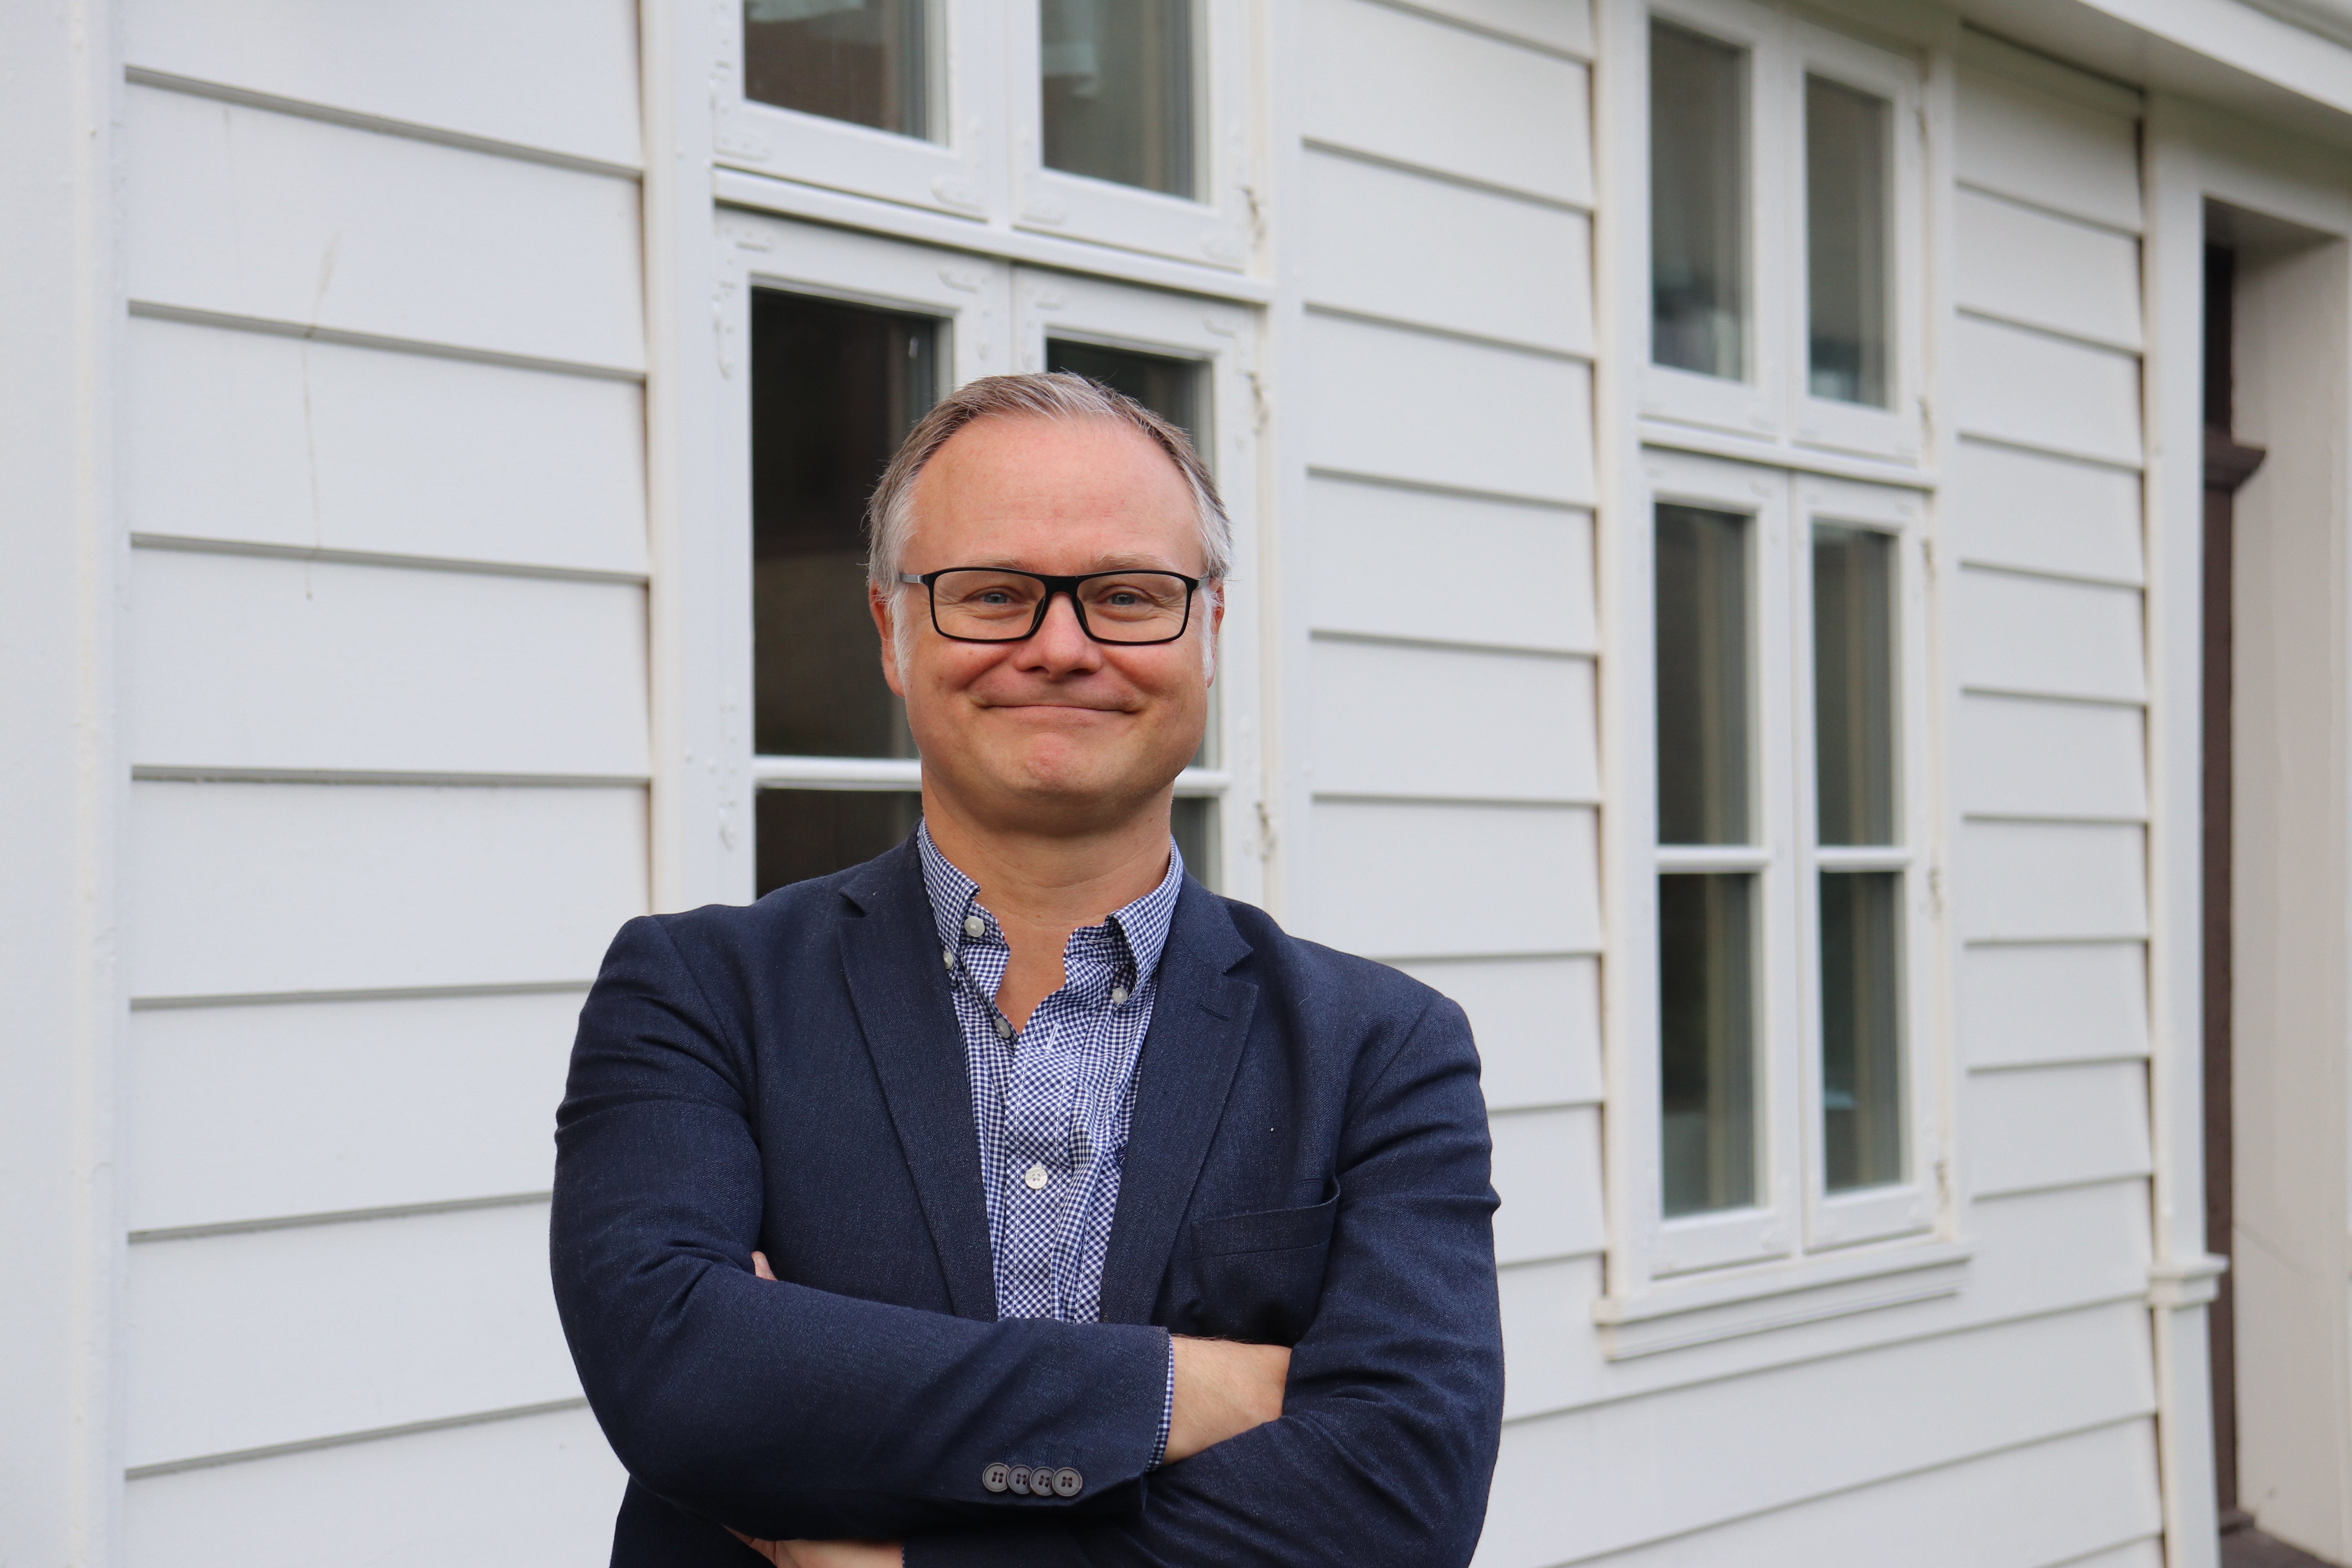 Professor Bjørn Enge Bertelsen will take up the post as Academic Director of the Holberg Prize Secretariat on 1 January, 2022.